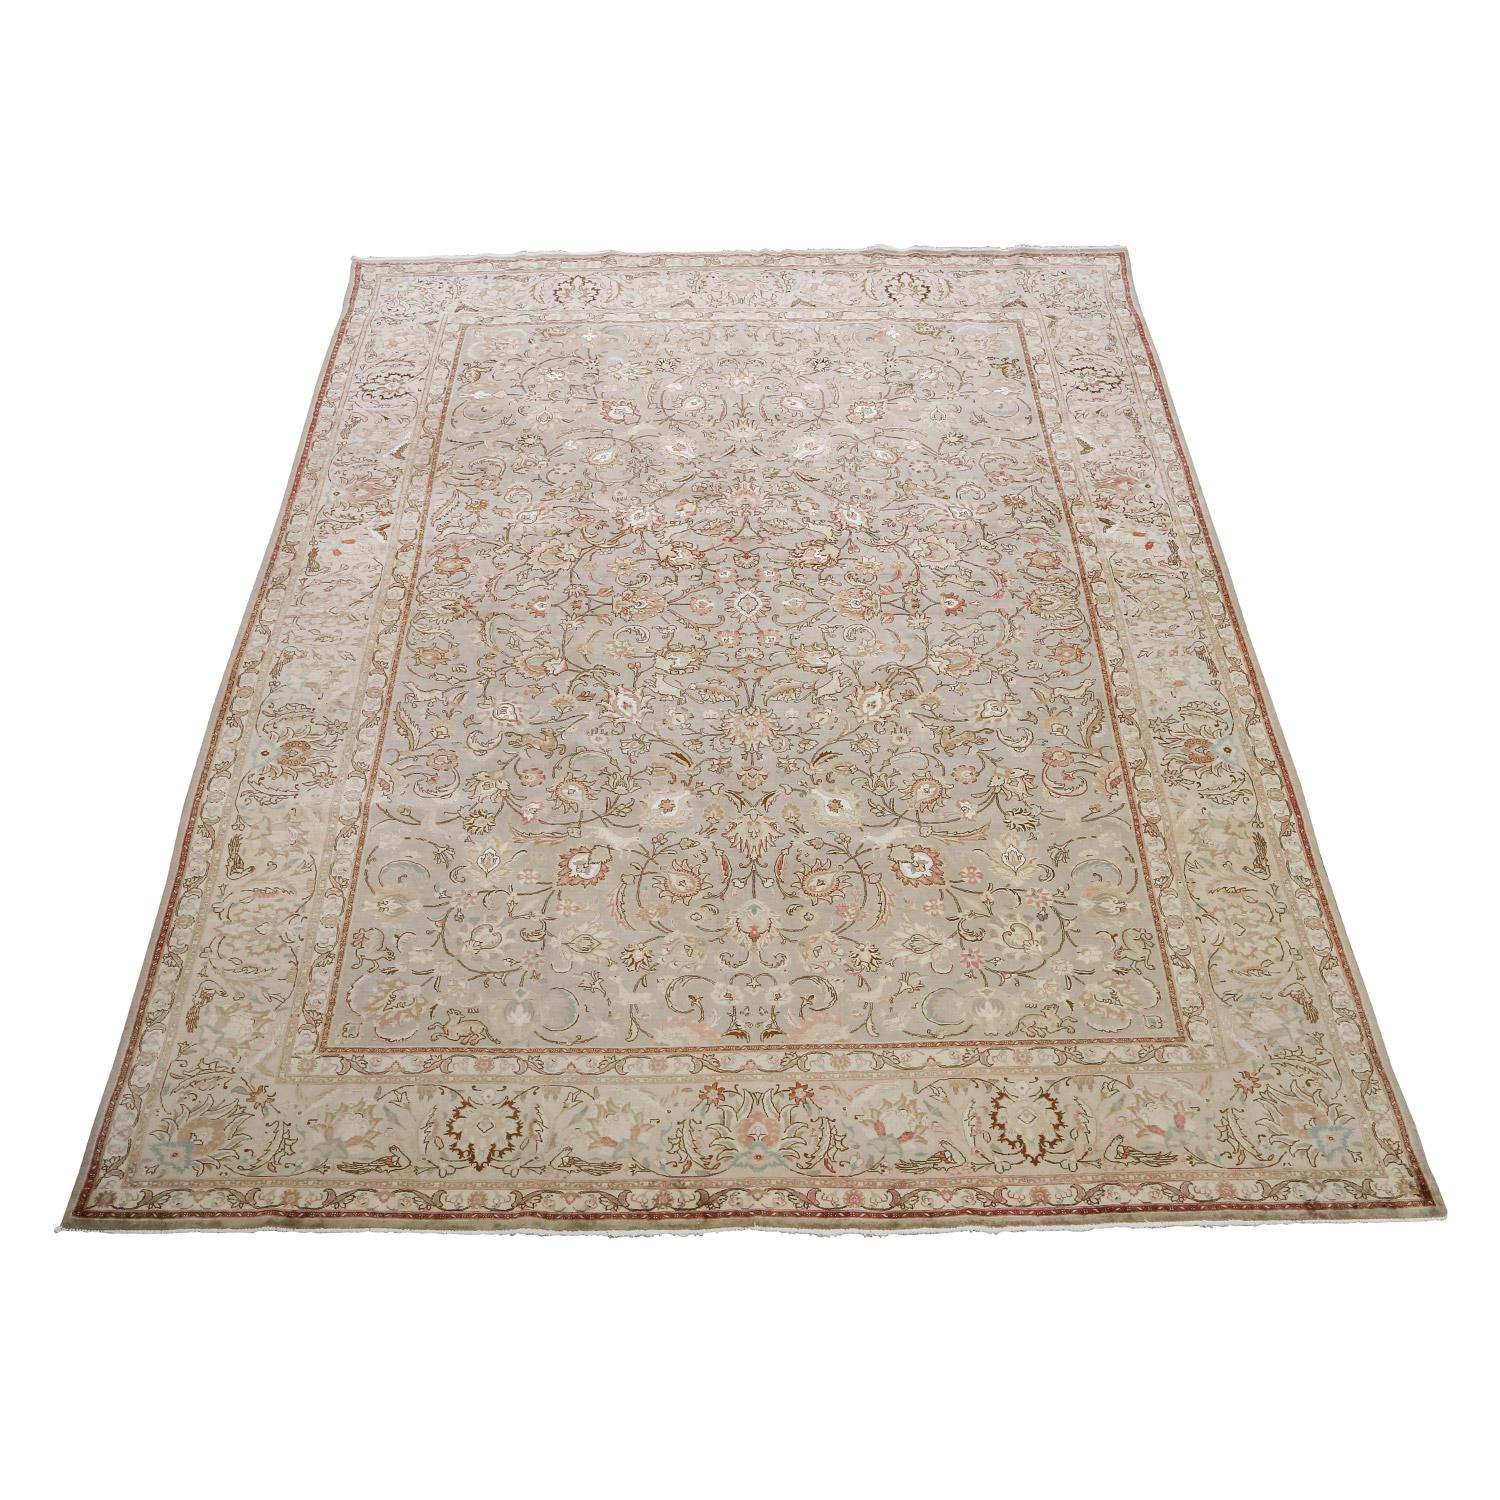 Ce tapis Tabriz vintage dégage une sophistication intemporelle grâce à son élégant design/One et à sa palette de couleurs neutres. Le mélange harmonieux de tons doux, dont l'ivoire, le beige et les gris subtils, crée un sentiment de tranquillité et